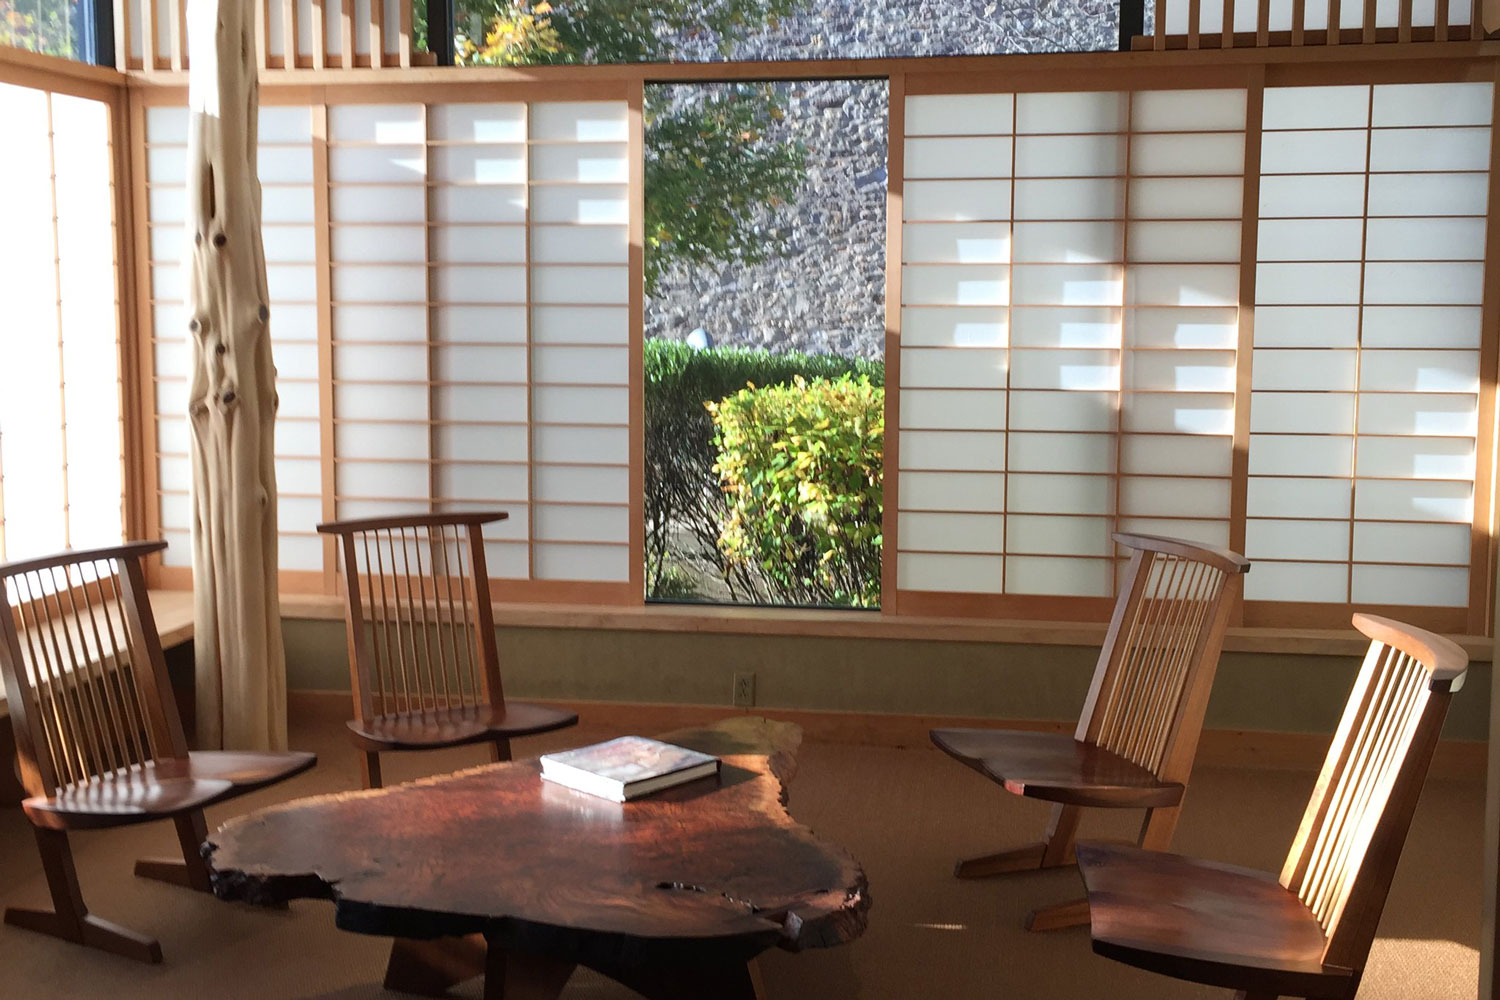 Nakashima Reading Room at James A. Michener Museum of Art. Photo: Laura Blanchard/CC BY-SA 2.0.